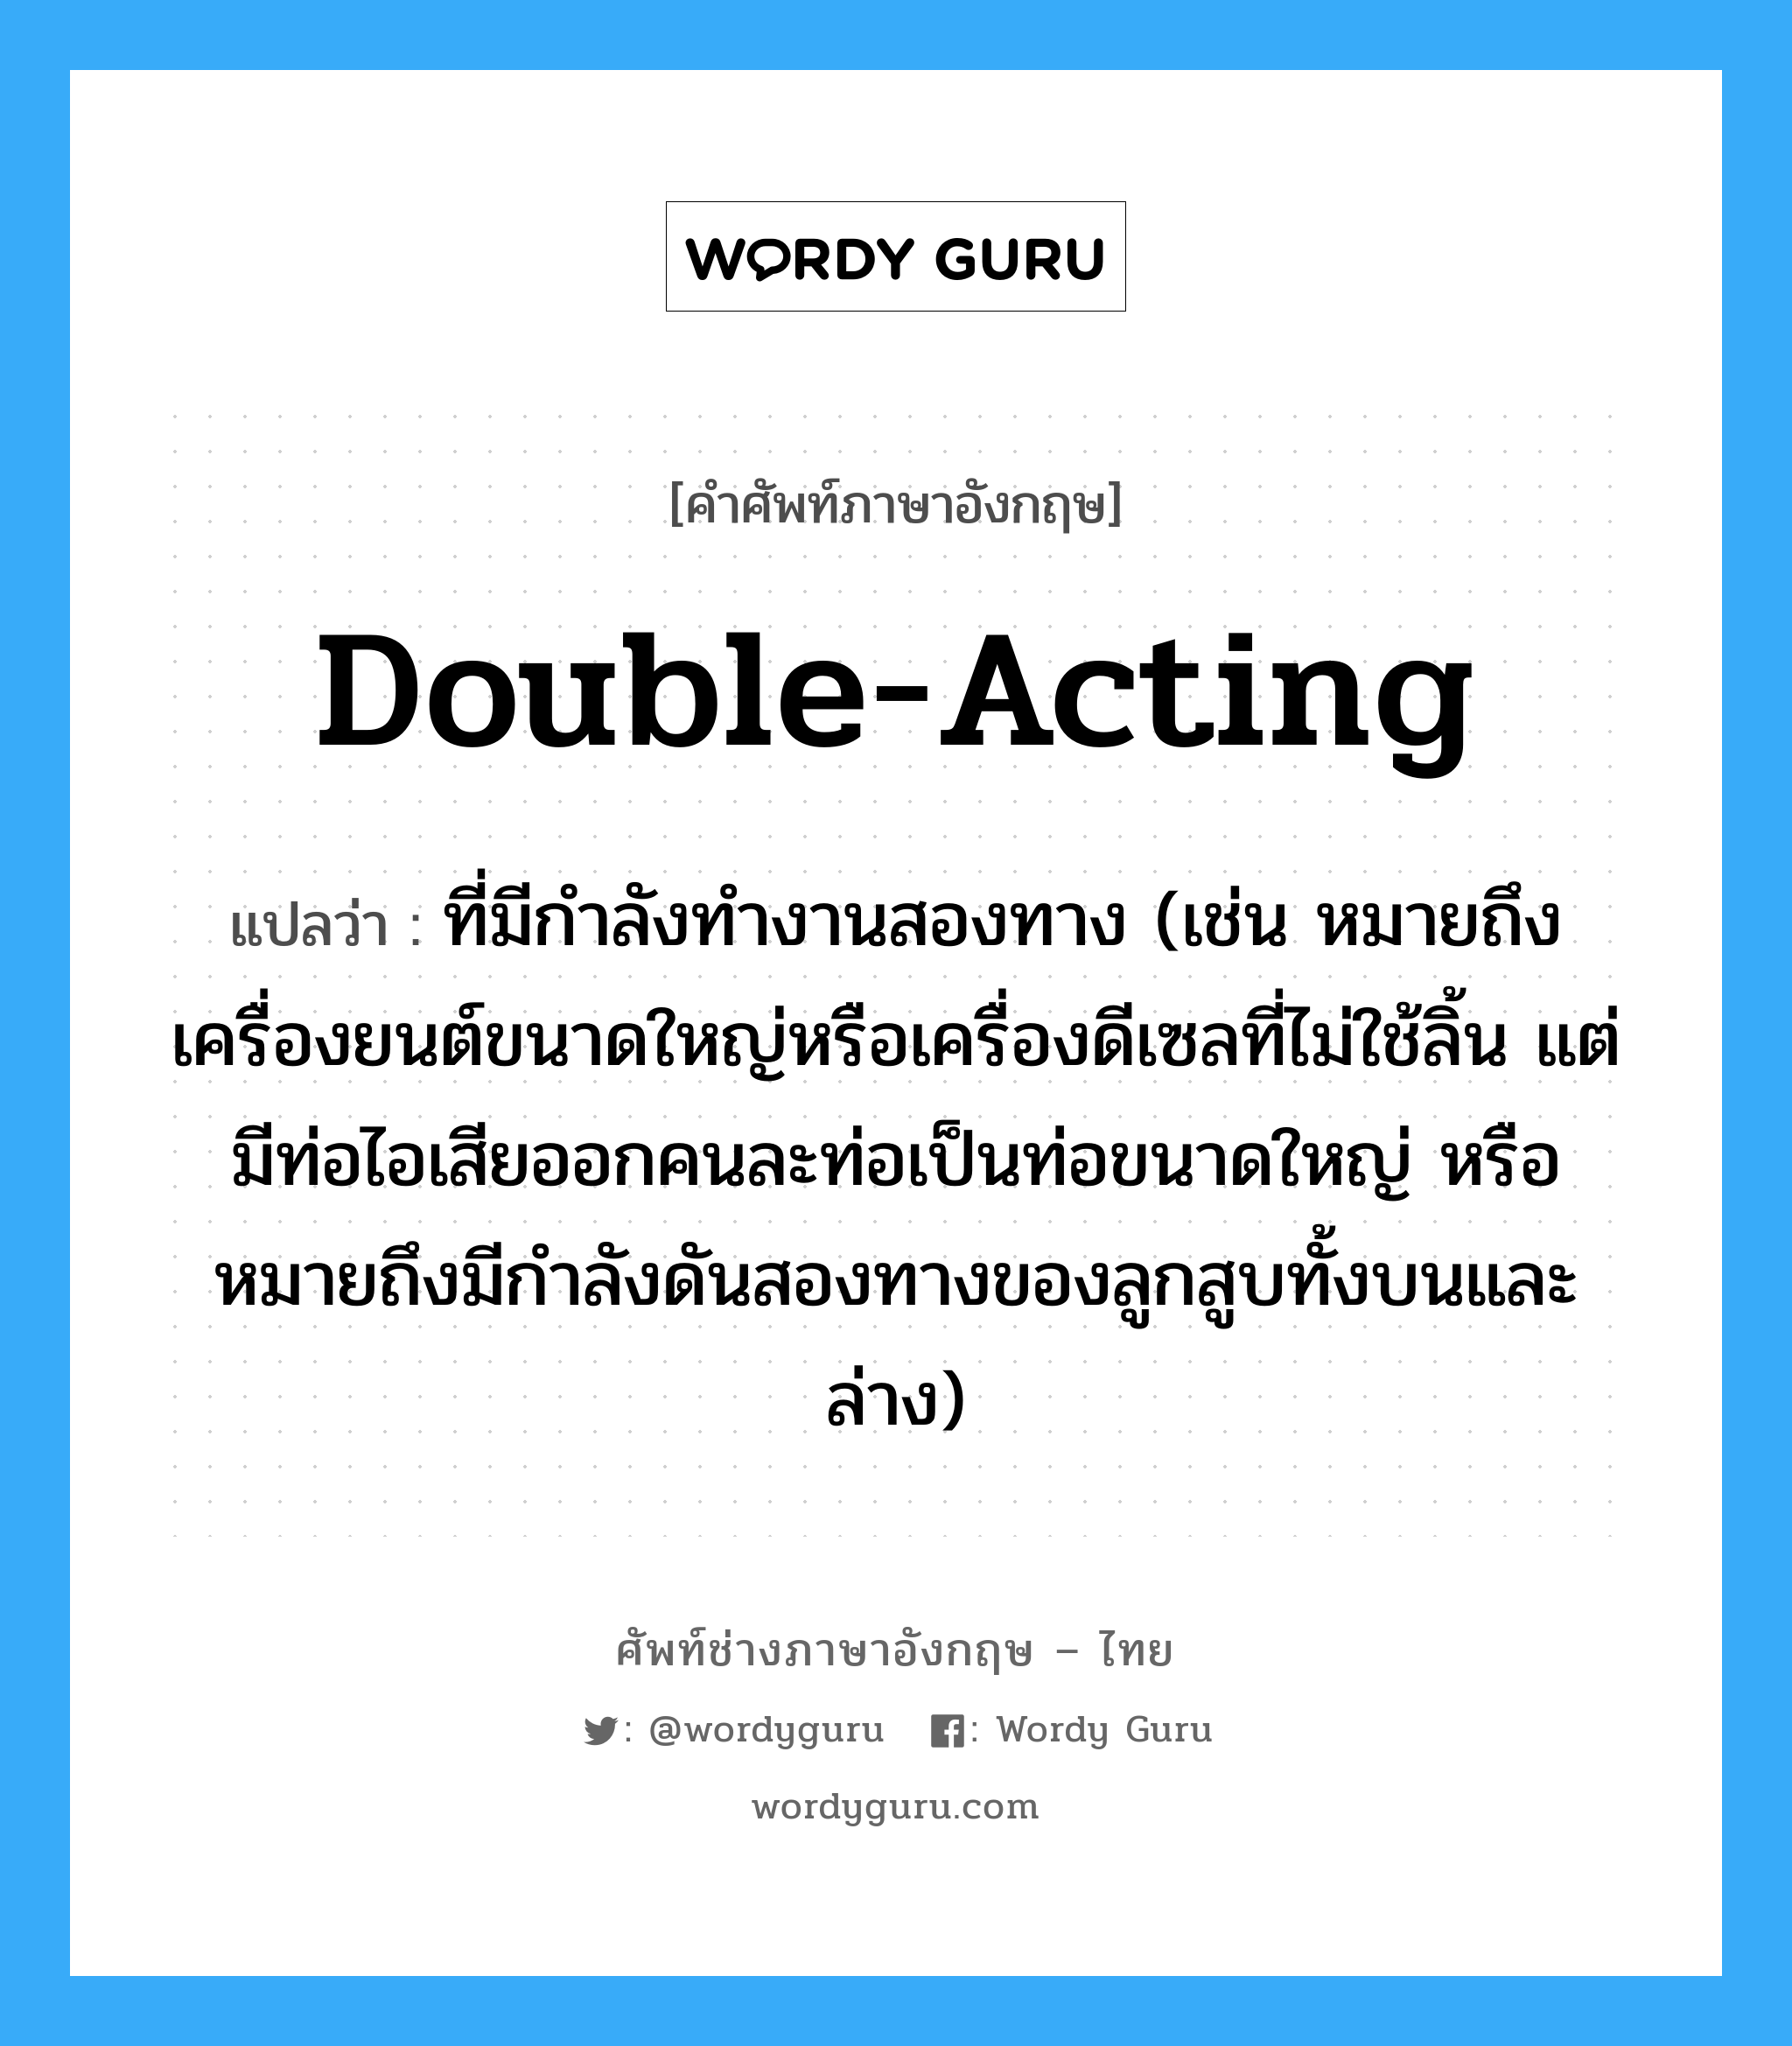 double-acting แปลว่า?, คำศัพท์ช่างภาษาอังกฤษ - ไทย double-acting คำศัพท์ภาษาอังกฤษ double-acting แปลว่า ที่มีกำลังทำงานสองทาง (เช่น หมายถึงเครื่องยนต์ขนาดใหญ่หรือเครื่องดีเซลที่ไม่ใช้ลิ้น แต่มีท่อไอเสียออกคนละท่อเป็นท่อขนาดใหญ่ หรือหมายถึงมีกำลังดันสองทางของลูกสูบทั้งบนและล่าง)